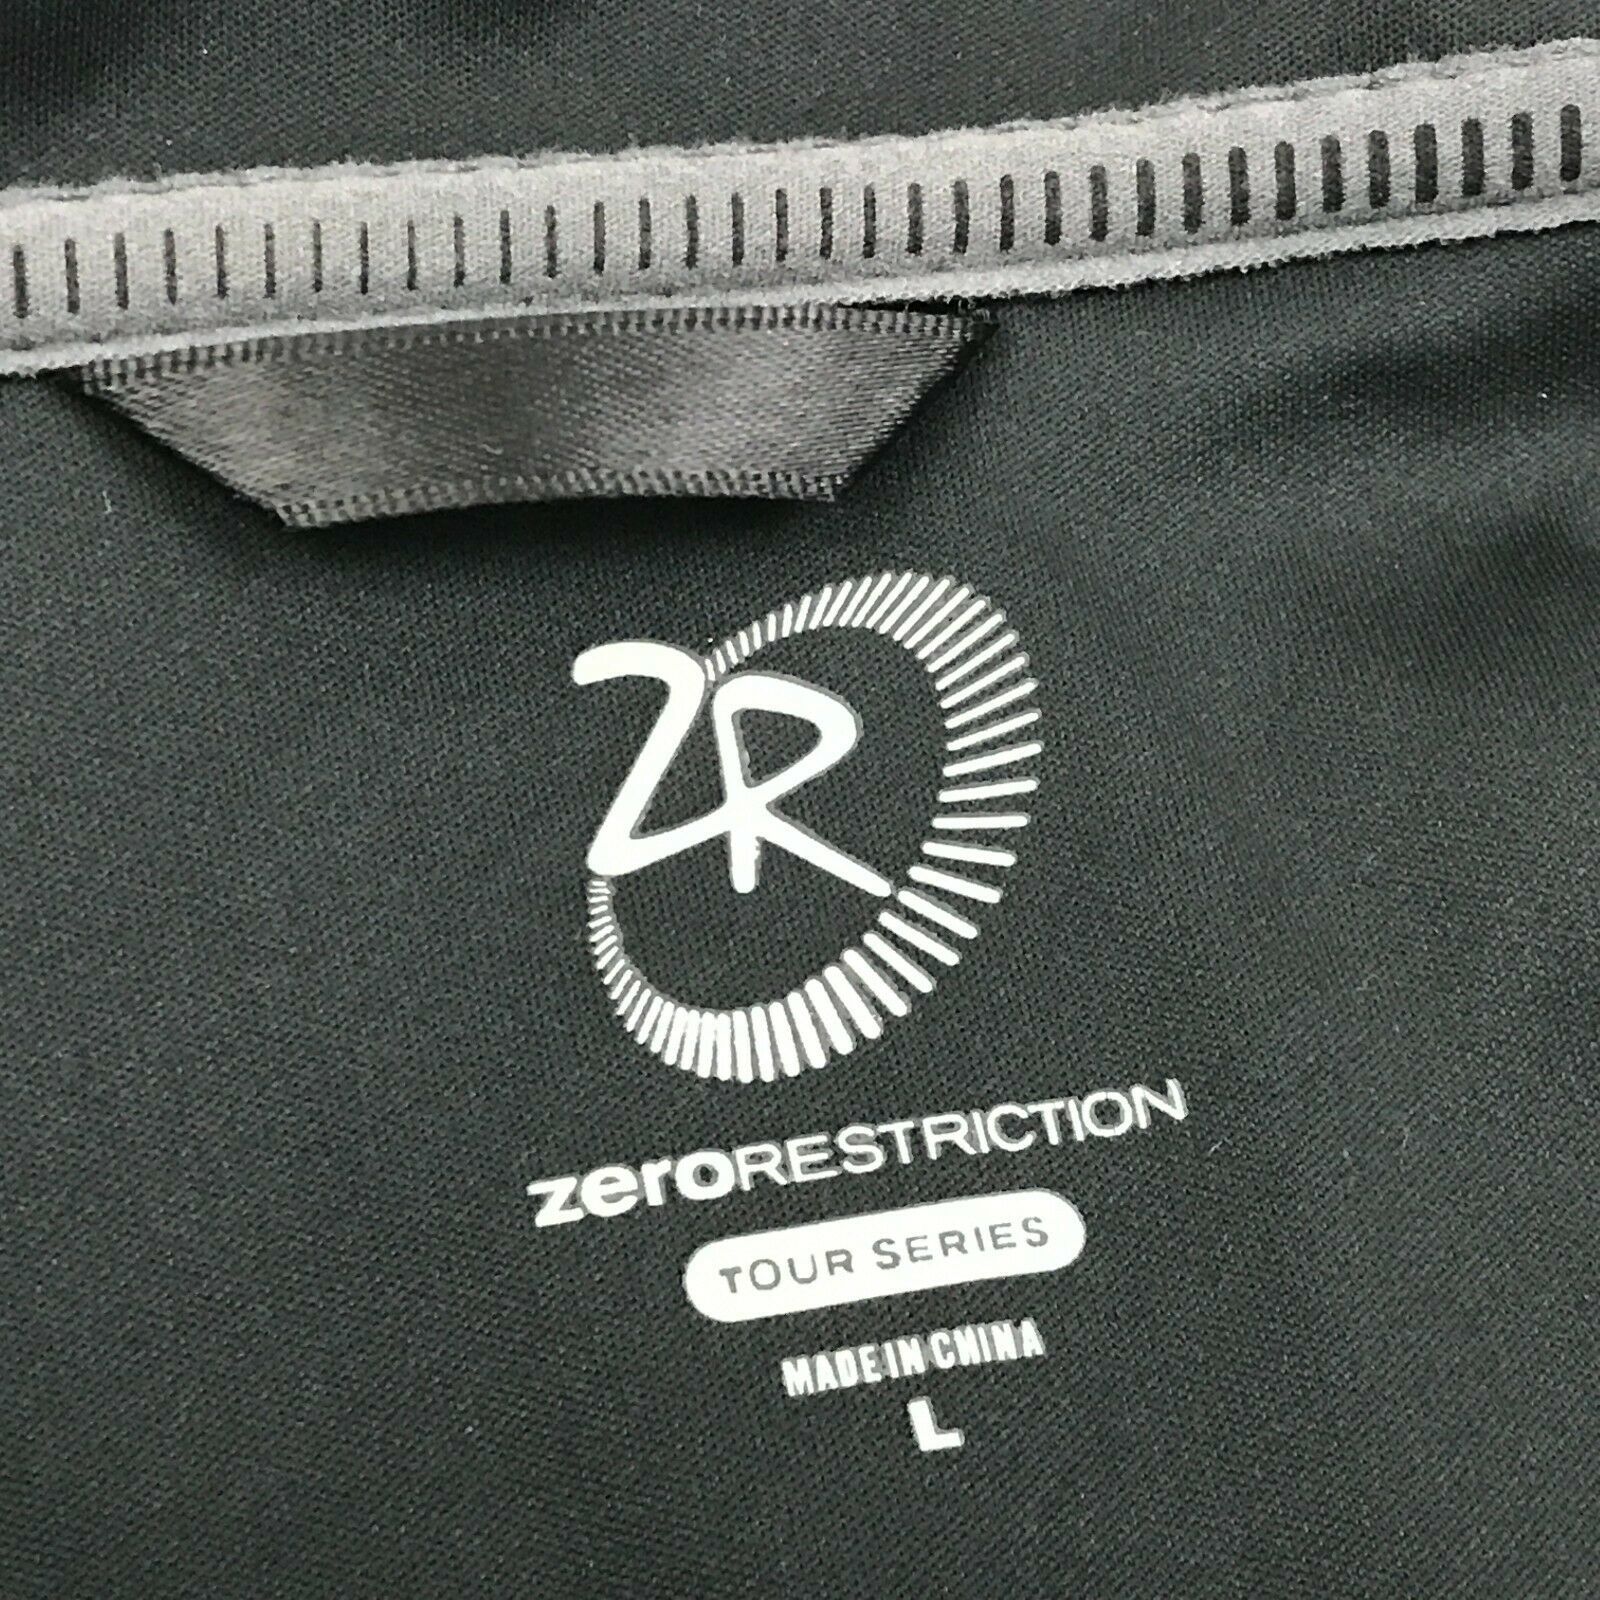 zero restriction tour series jacket